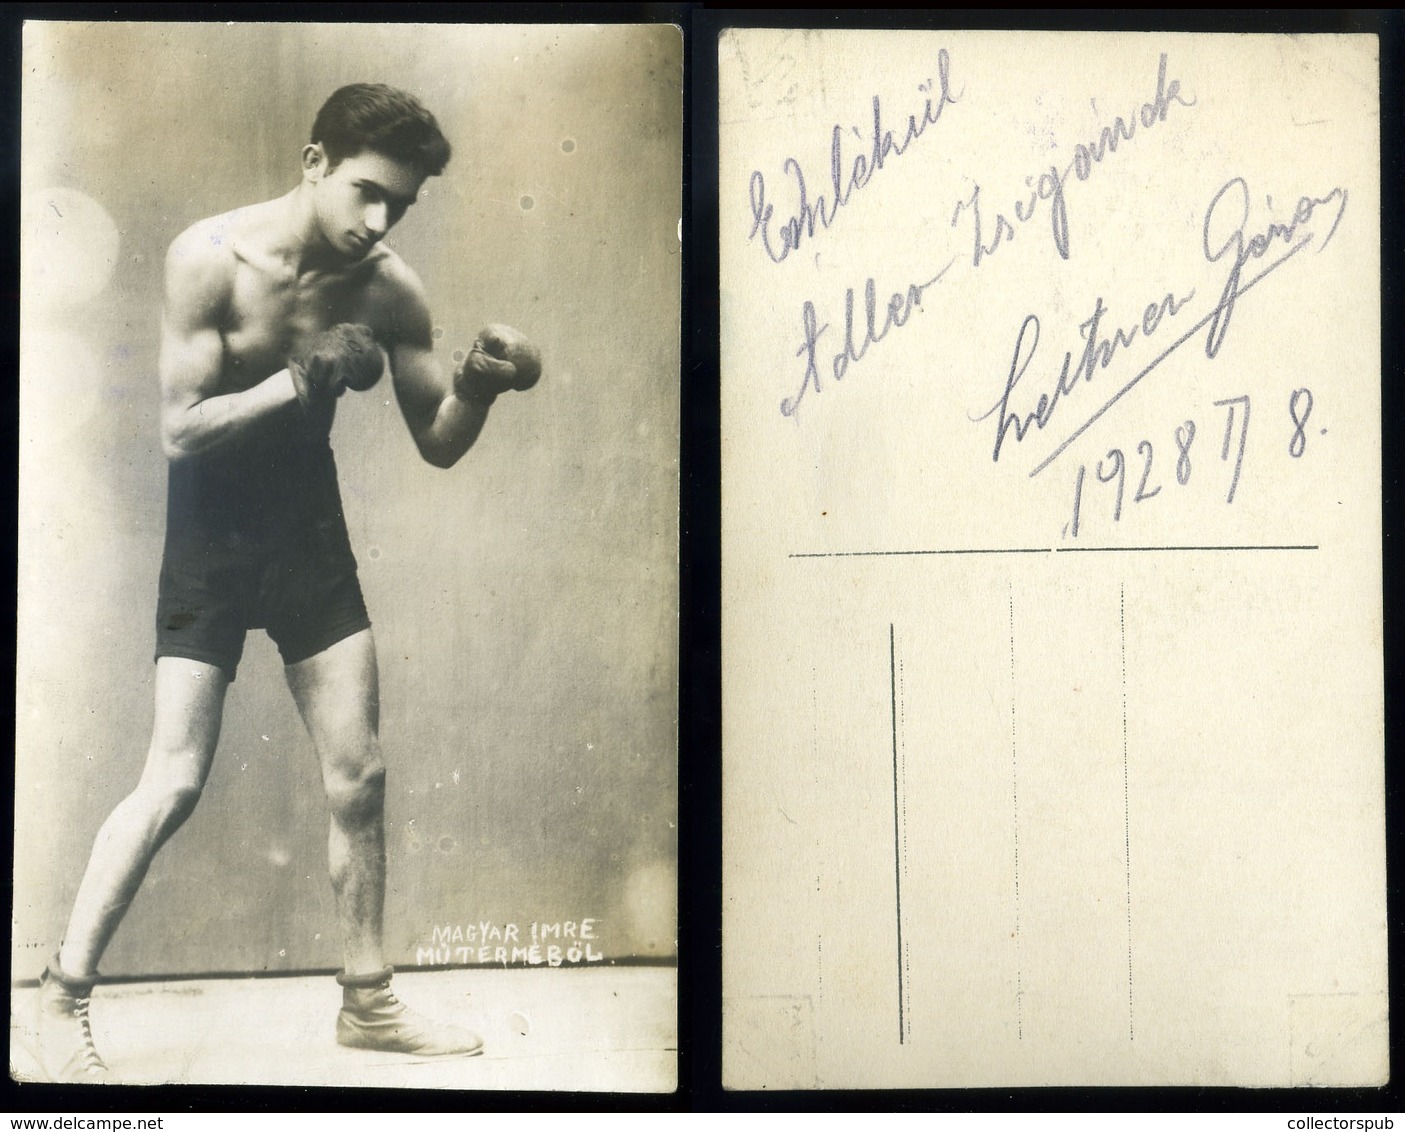 SPORT ökölvívás , Ökölvívó ,   Fotós Képeslap Ádler Zsigmondnak Dedikálva  /  SPORT Boxing Photo Vintage Pic. P.card Ded - Hongrie